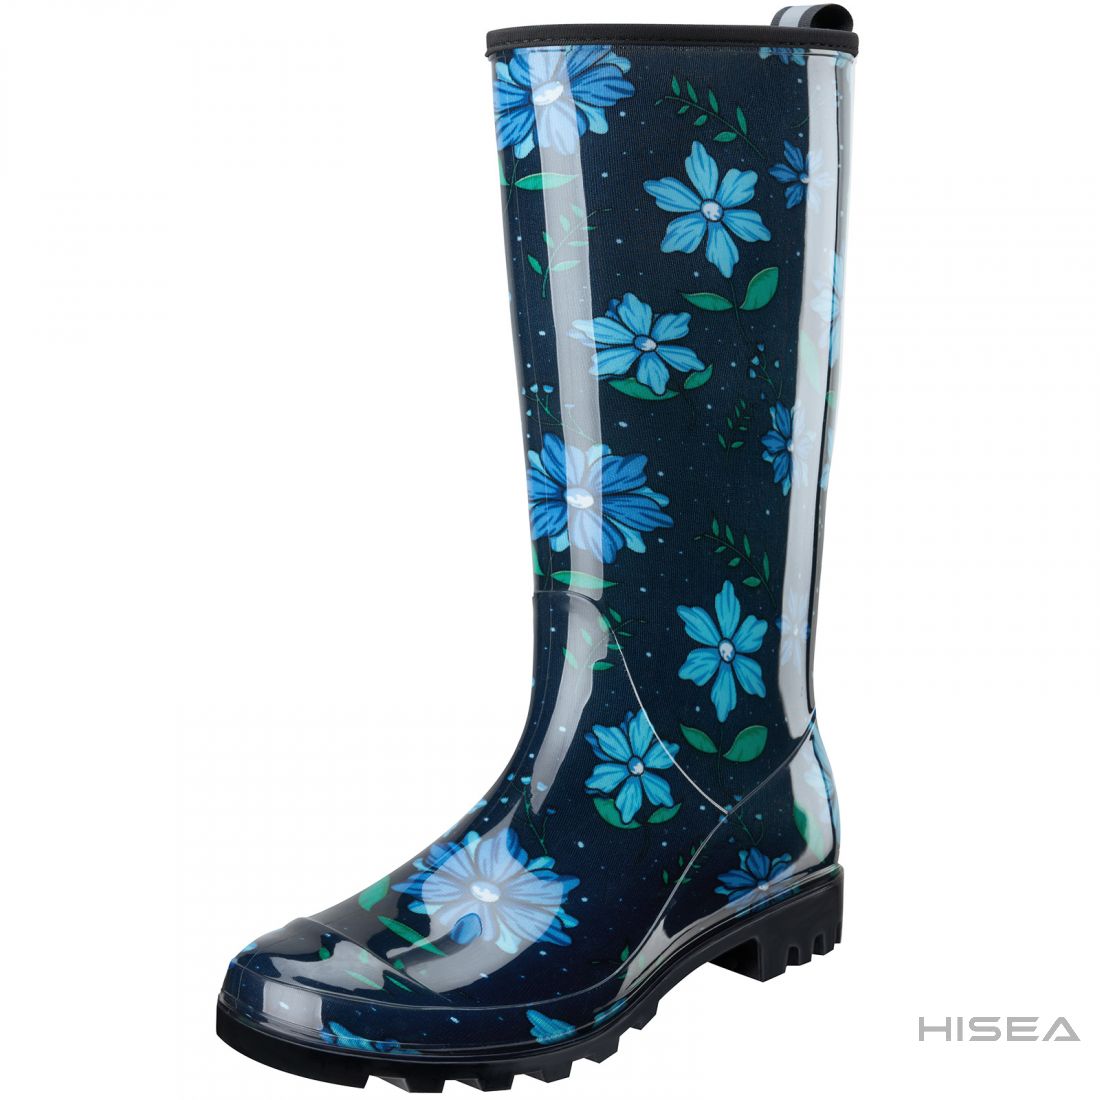 Women's Knee High Rain boots